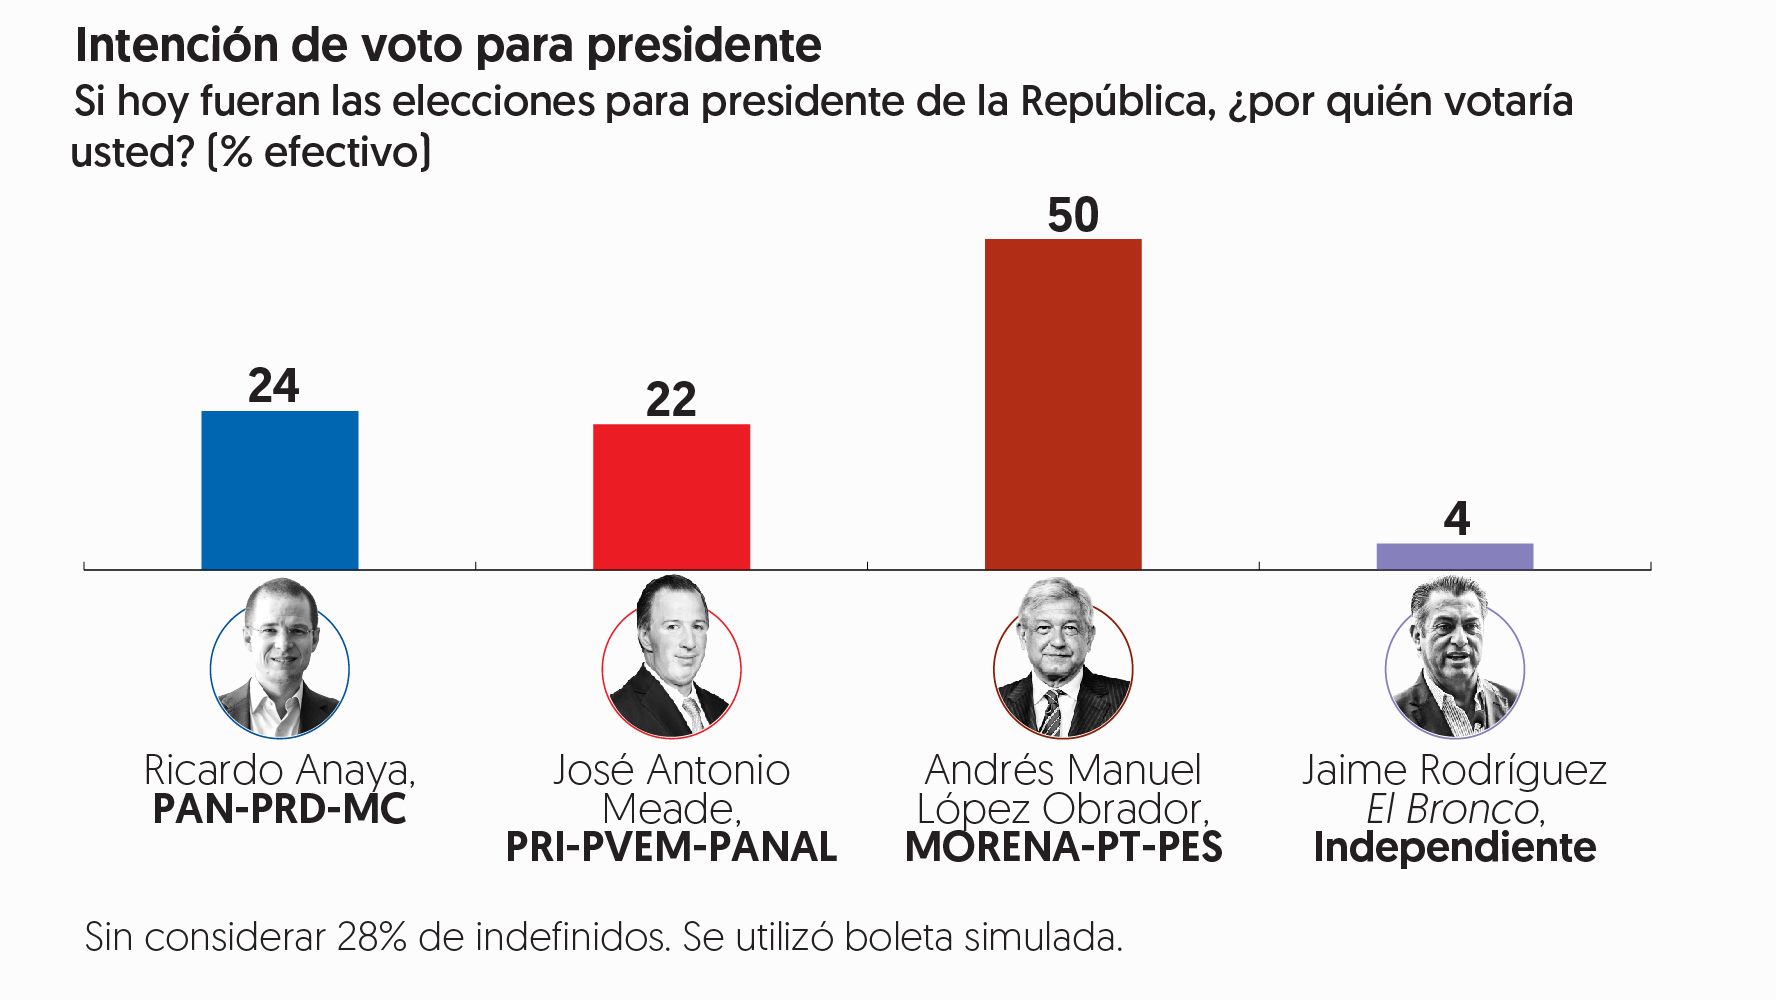 Encuesta de preferencias electorales de <em /></noscript>El Financiero</em>. Publicación: 4 de junio de 2018.» width=»1776″ height=»1000″ class=»aligncenter size-full wp-image-2765″></a></p>
<p>«La ventaja de Andrés Manuel López Obrador se amplió entre mayo y junio de 20 a 26 puntos, al subir en la intención de voto de 46% a 50%, mientras que Ricardo Anaya pasó de 26 a 24% José Antonio Meade suma 22%», destaca Alejandro Moreno en la <a href=